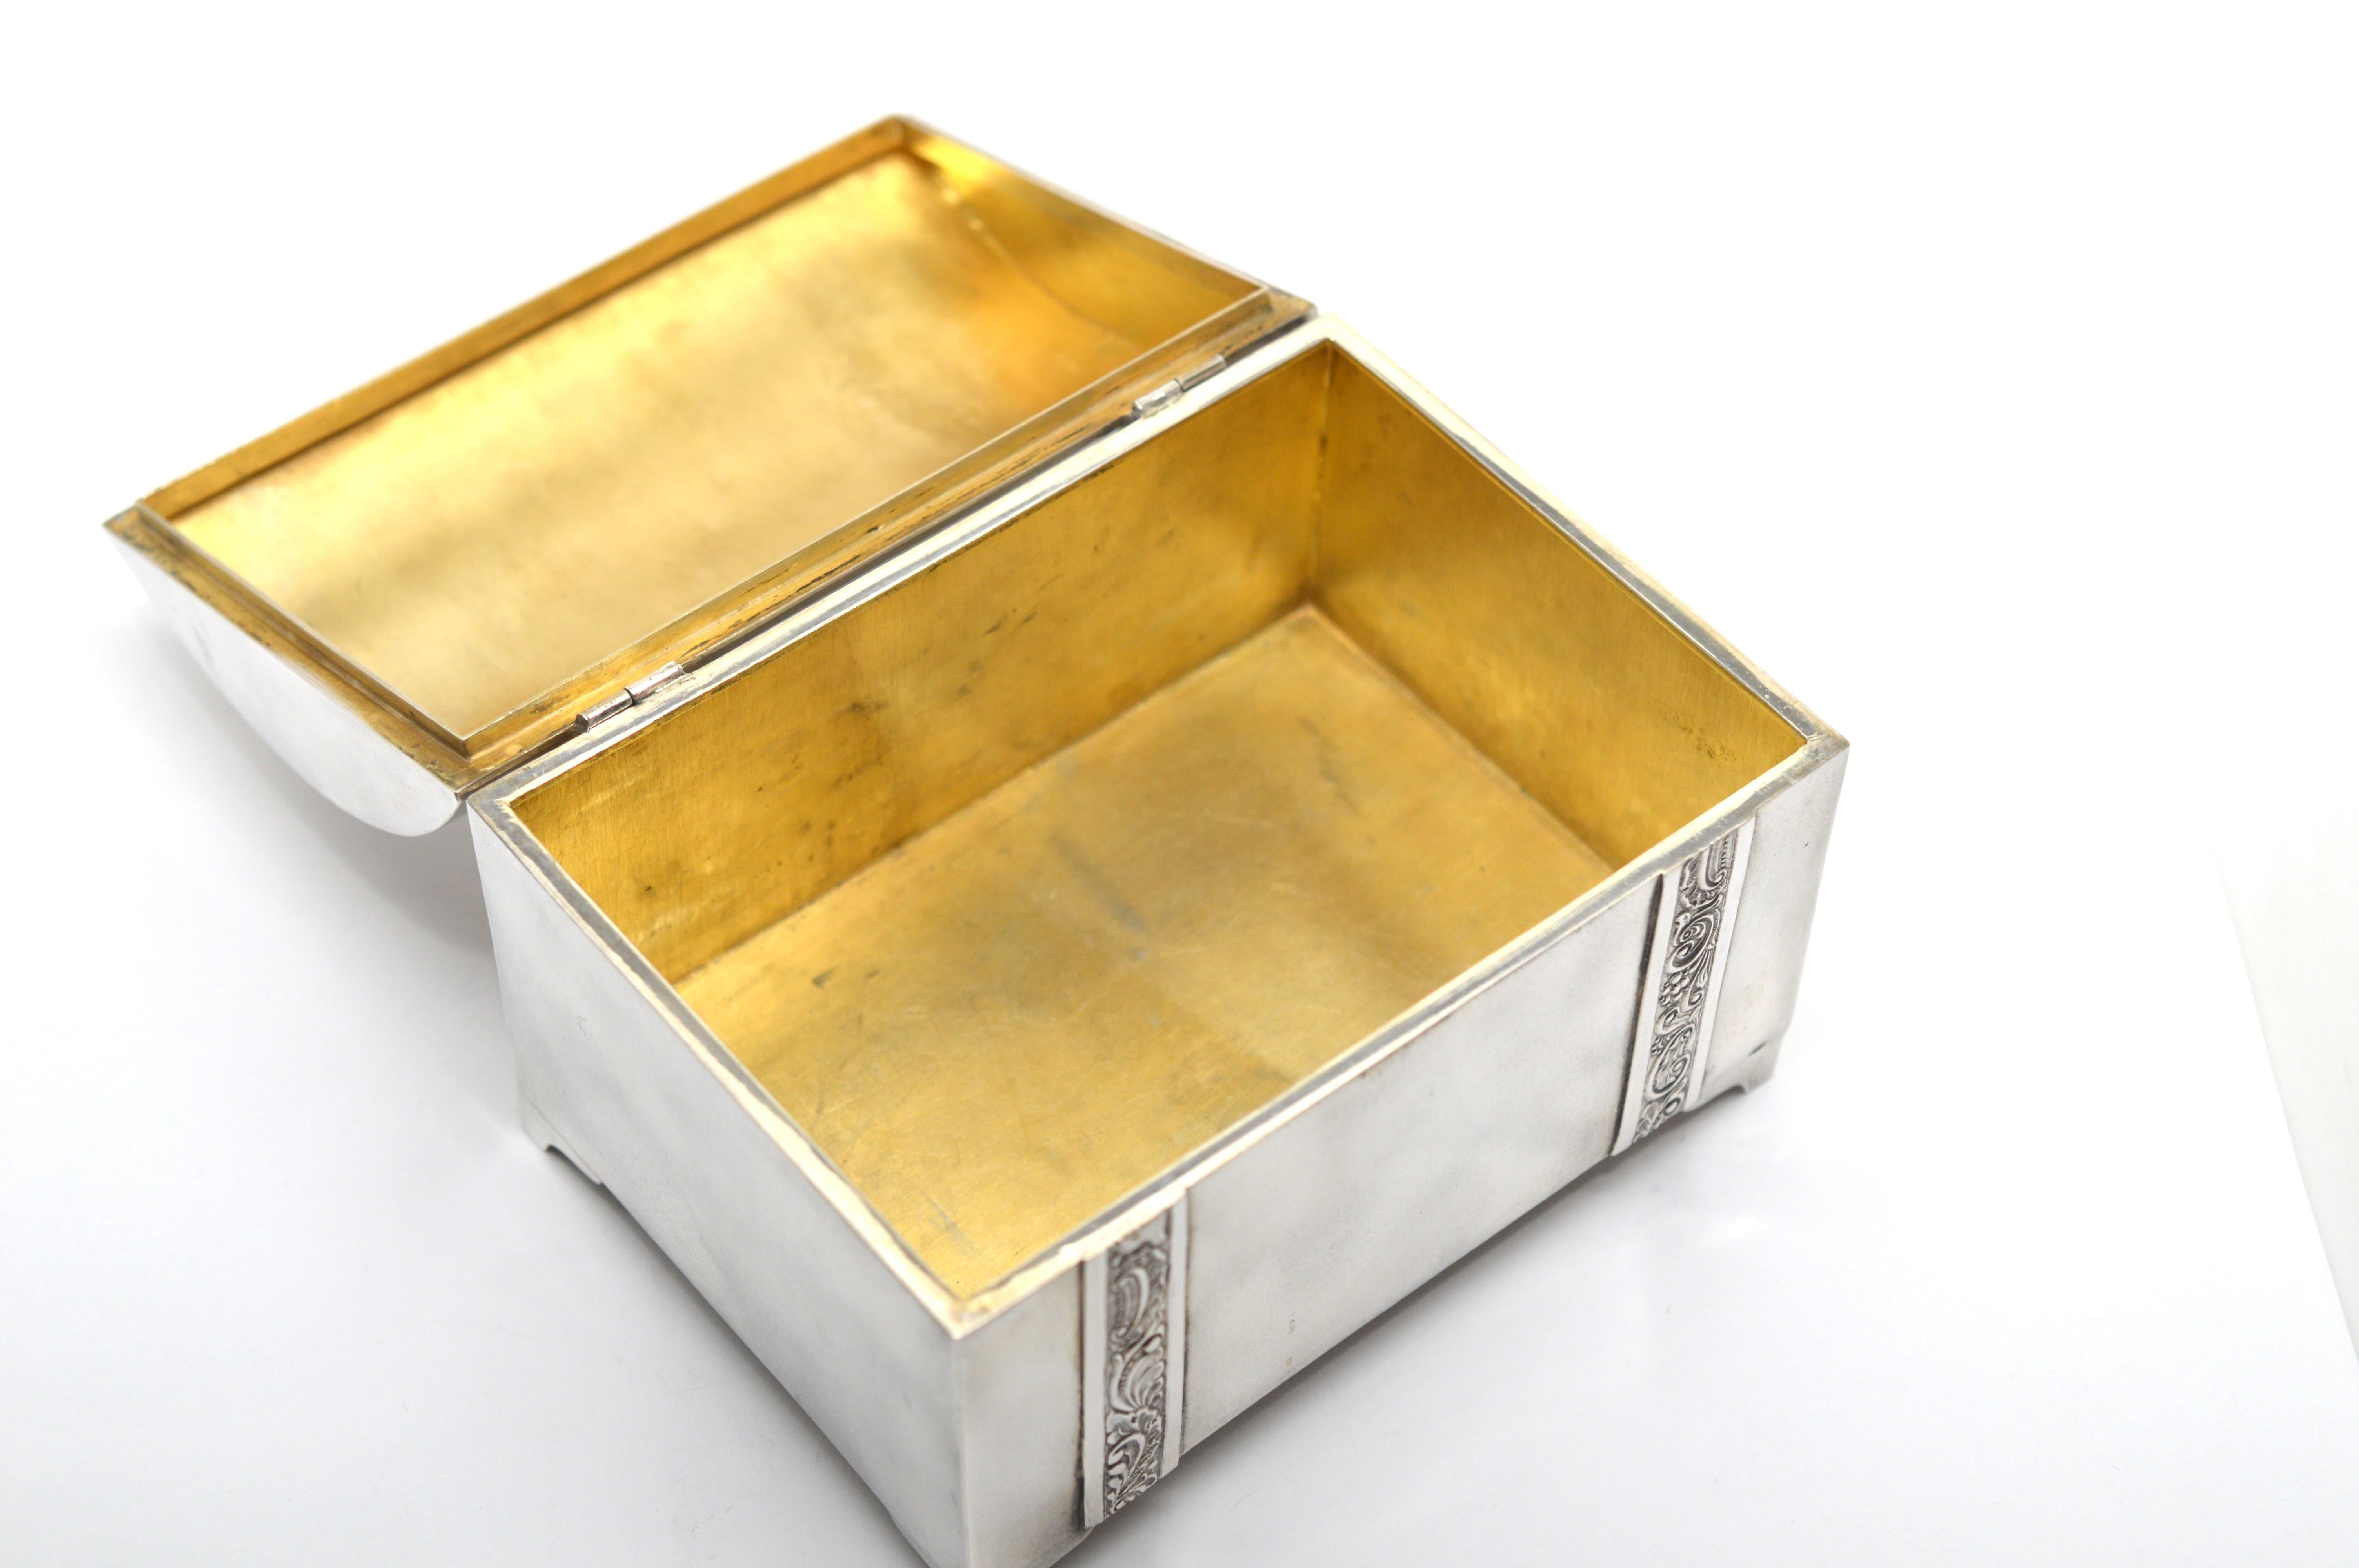 Handgefertigte estnische 875er Silberdose aus der Vorkriegszeit mit vergoldetem Innenleben. Die Tischtruhe mit konturierter Platte misst etwa  4-3/4 Zoll lang x 3-3/8 Zoll breit x 2-3/4 hoch. Großes Gesprächsstück für Couchtisch oder Sammler.